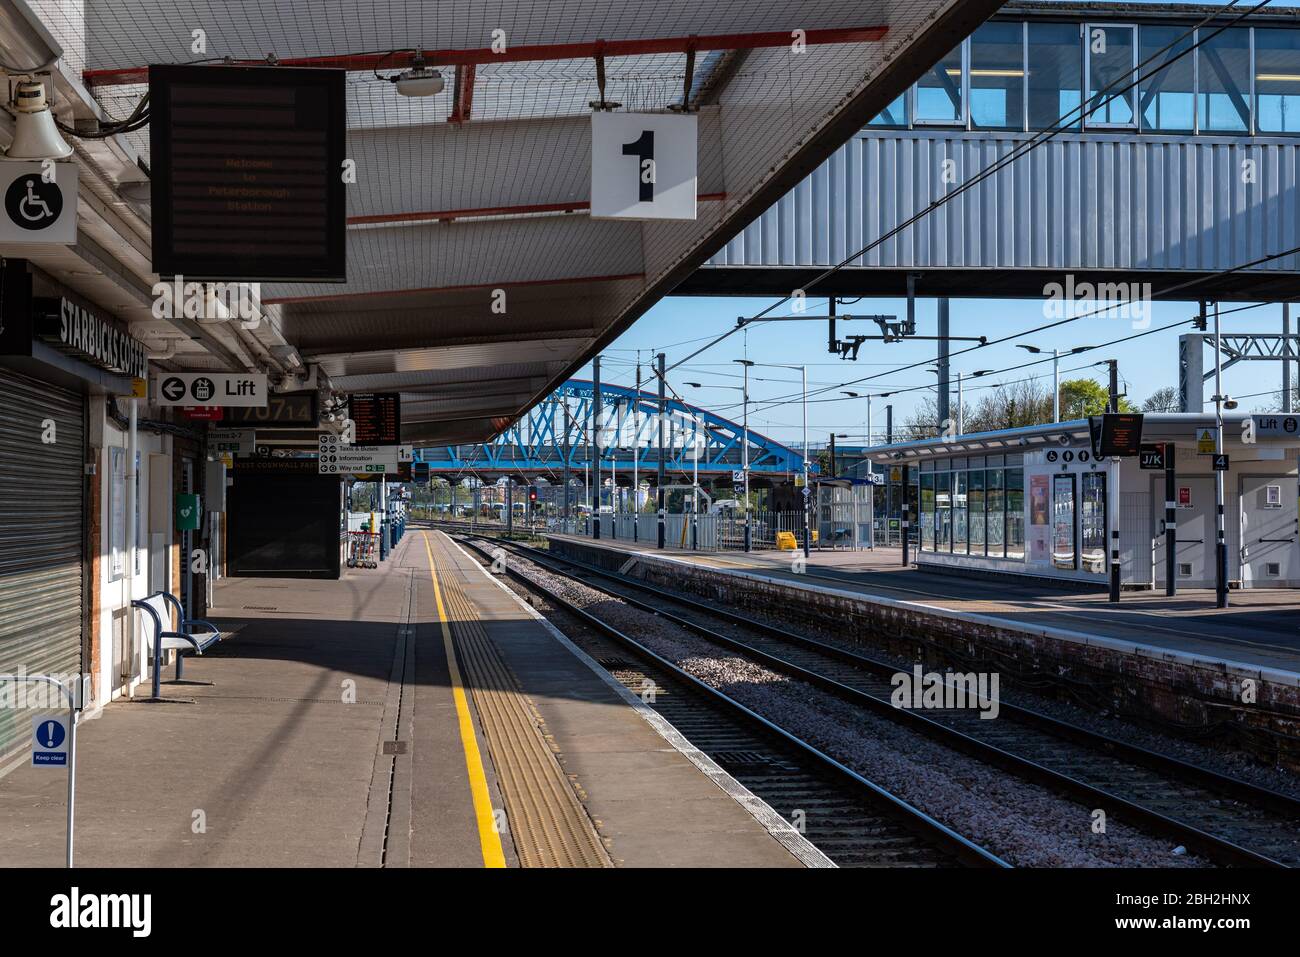 Gare de Peterborough pendant l'heure de pointe pendant le verrouillage du coronavirus covid-19. La plate-forme et le parcours sont vides pendant que les gens travaillent à domicile Banque D'Images